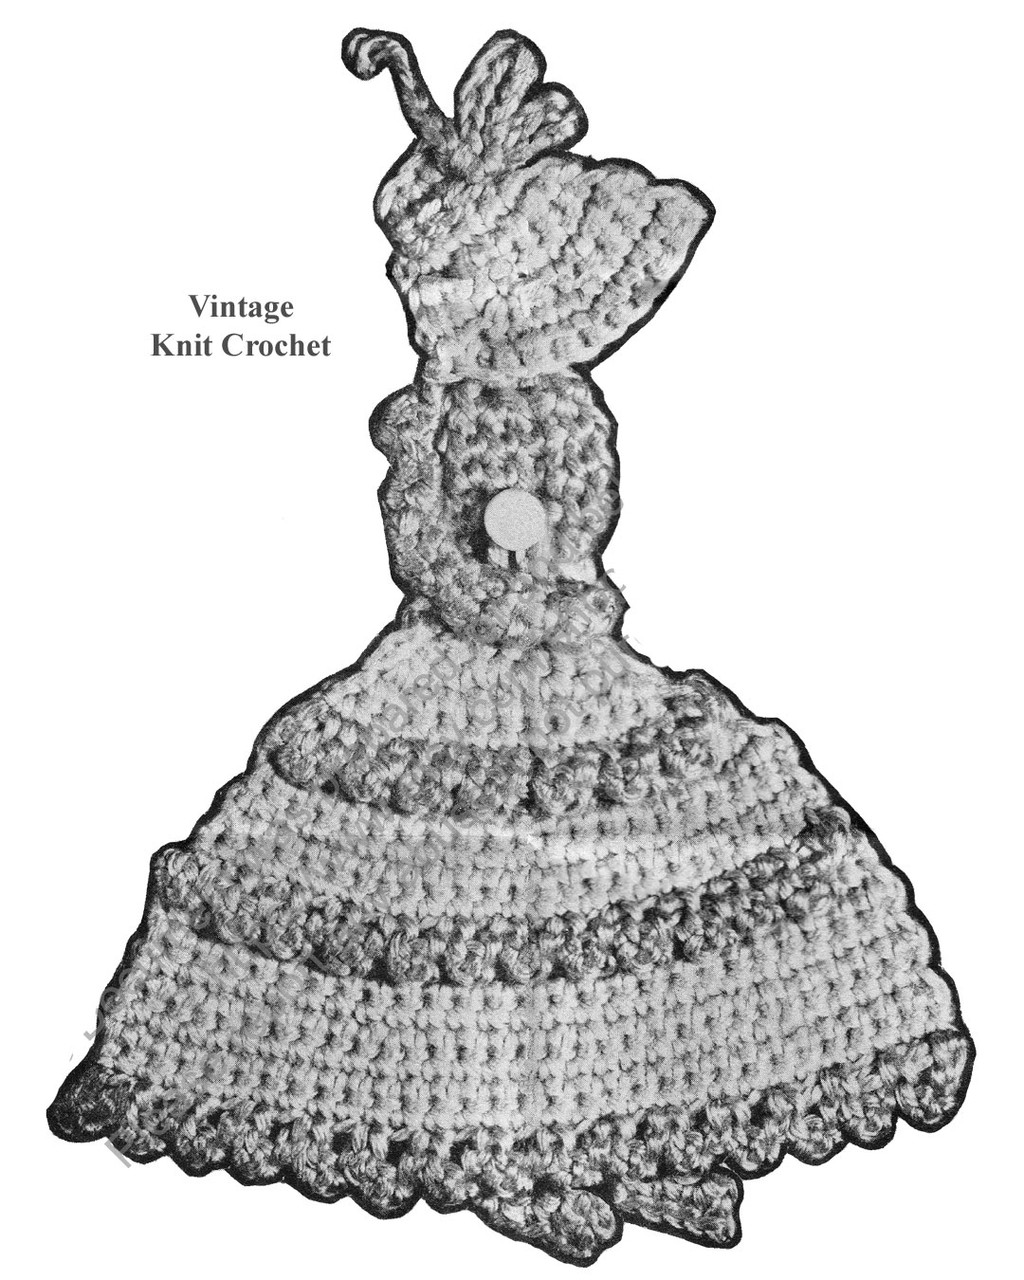 Old Fashioned Girl Potholder Illustration, Mail Order Design 7492